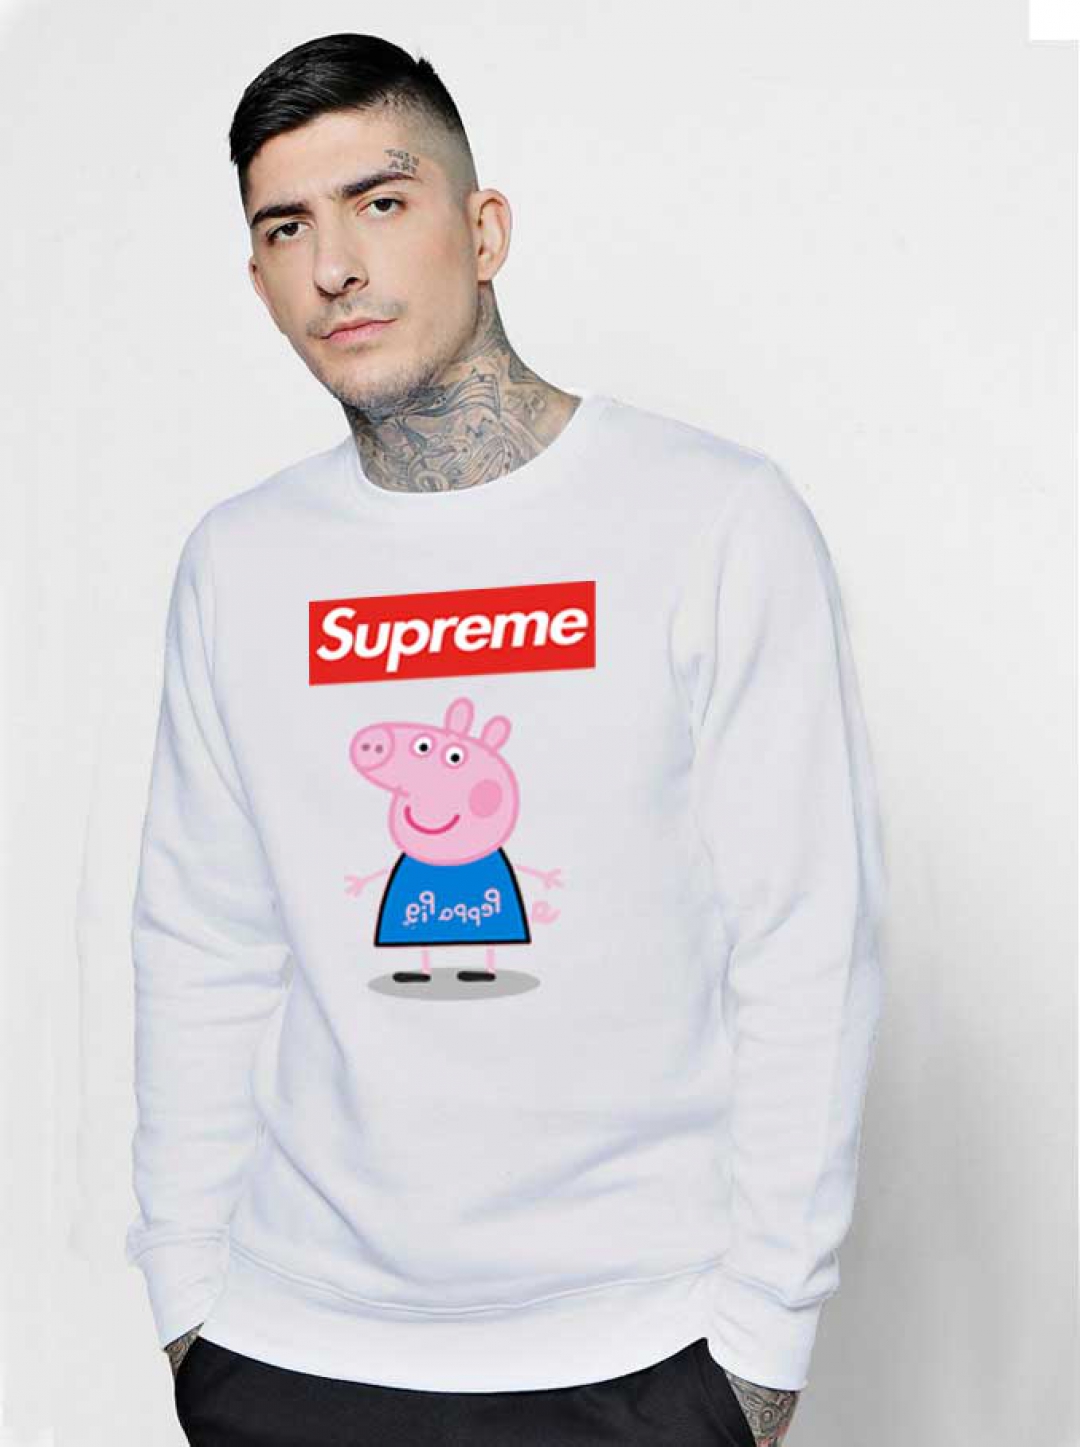 Supreme-Box-Blue-Peppa-Pig-Sweatshirt-1080x1447.jpg